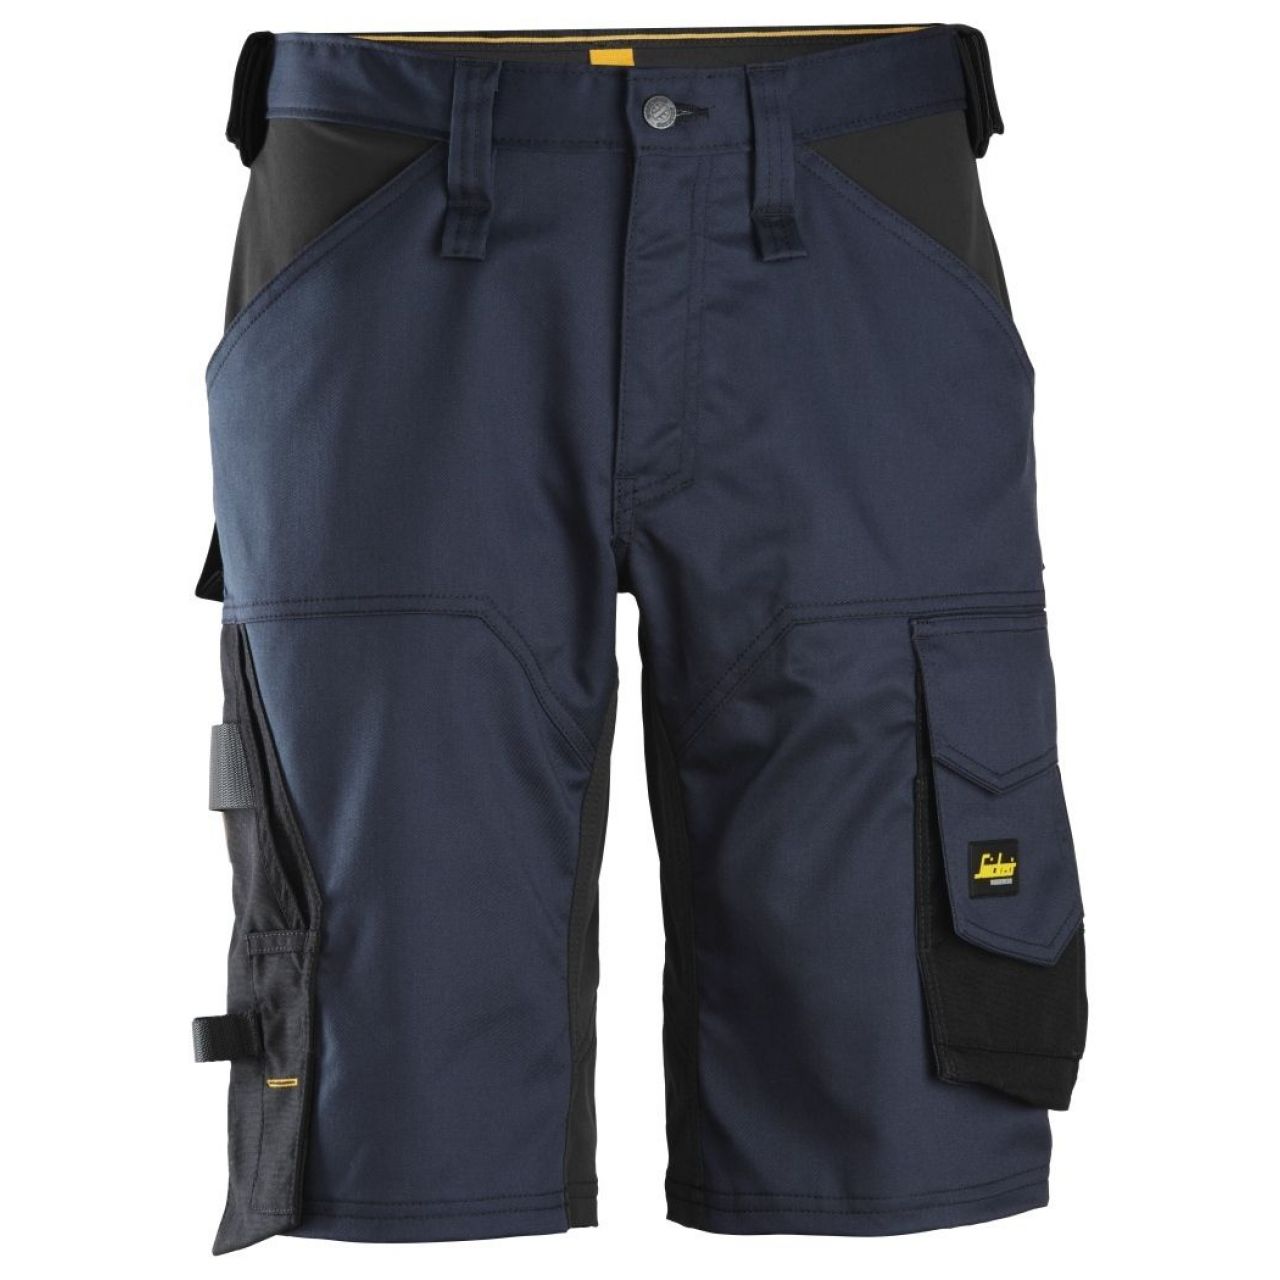 Pantalon corto elastico holgado AllroundWork azul marino-negro talla 058